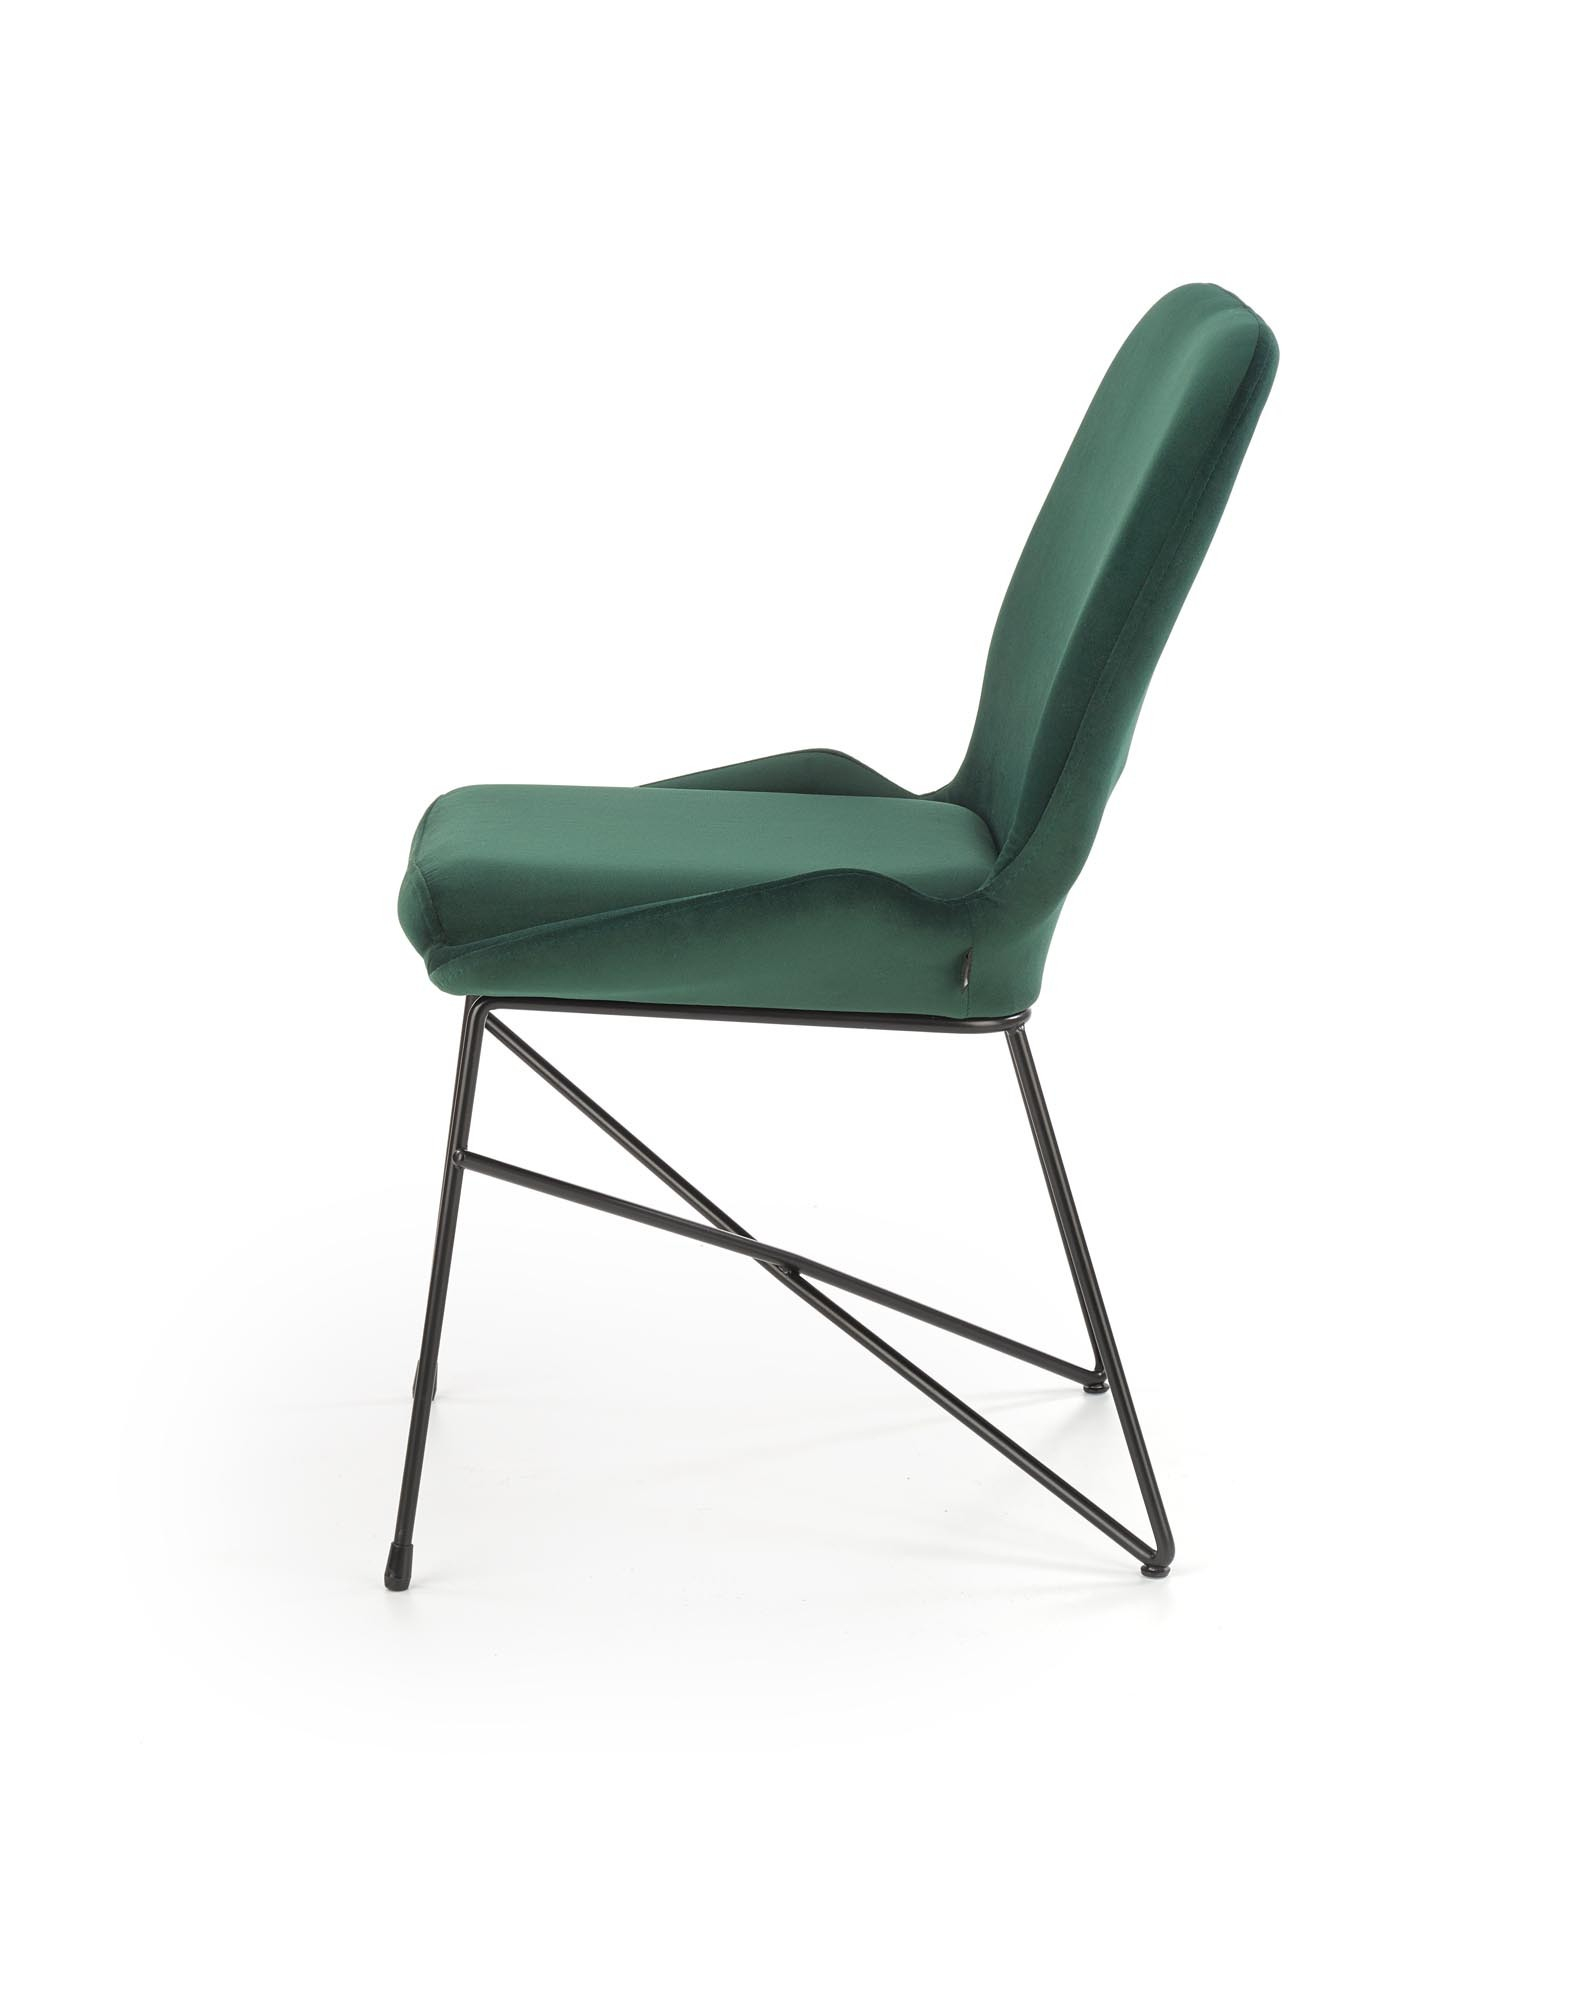 K454 krzesło, kolor: ciemny zielony